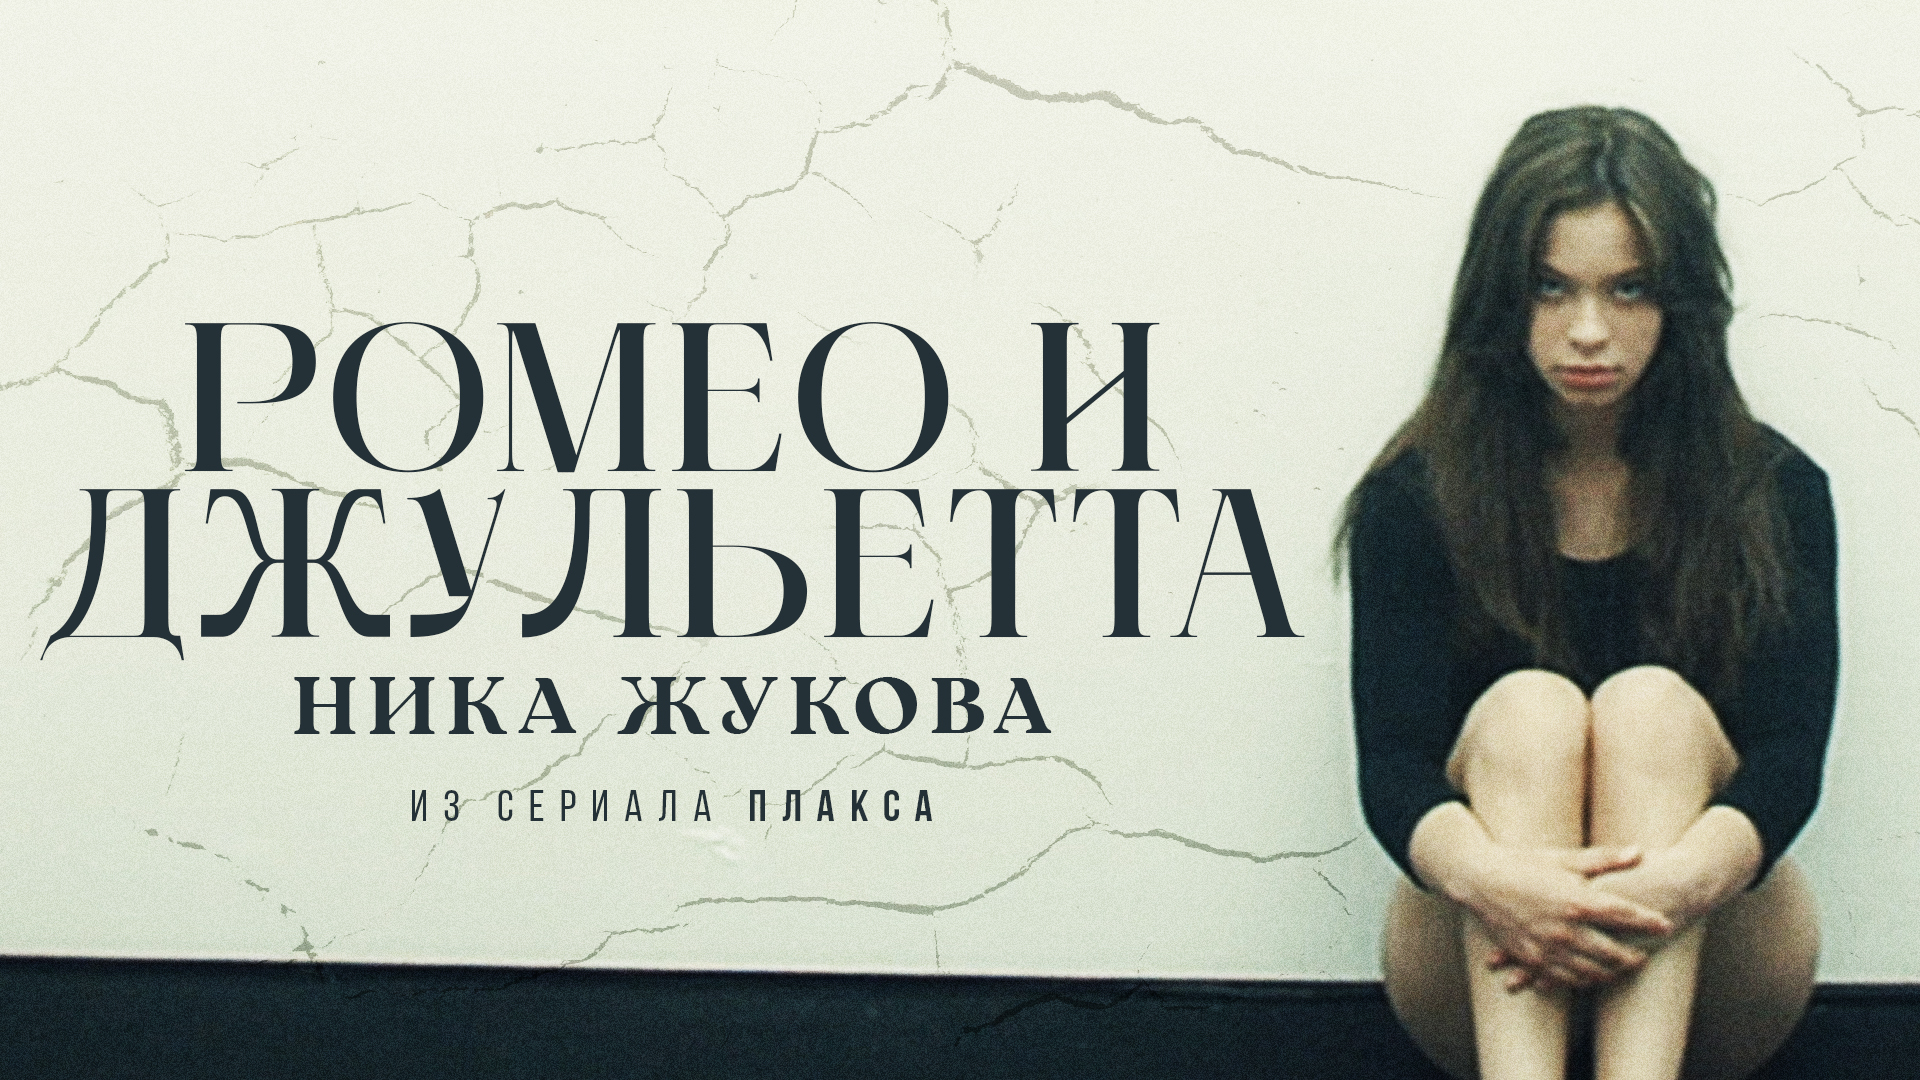 Ника Жукова – Ромео и Джульетта (из т/с "Плакса") (Премьера клипа!)